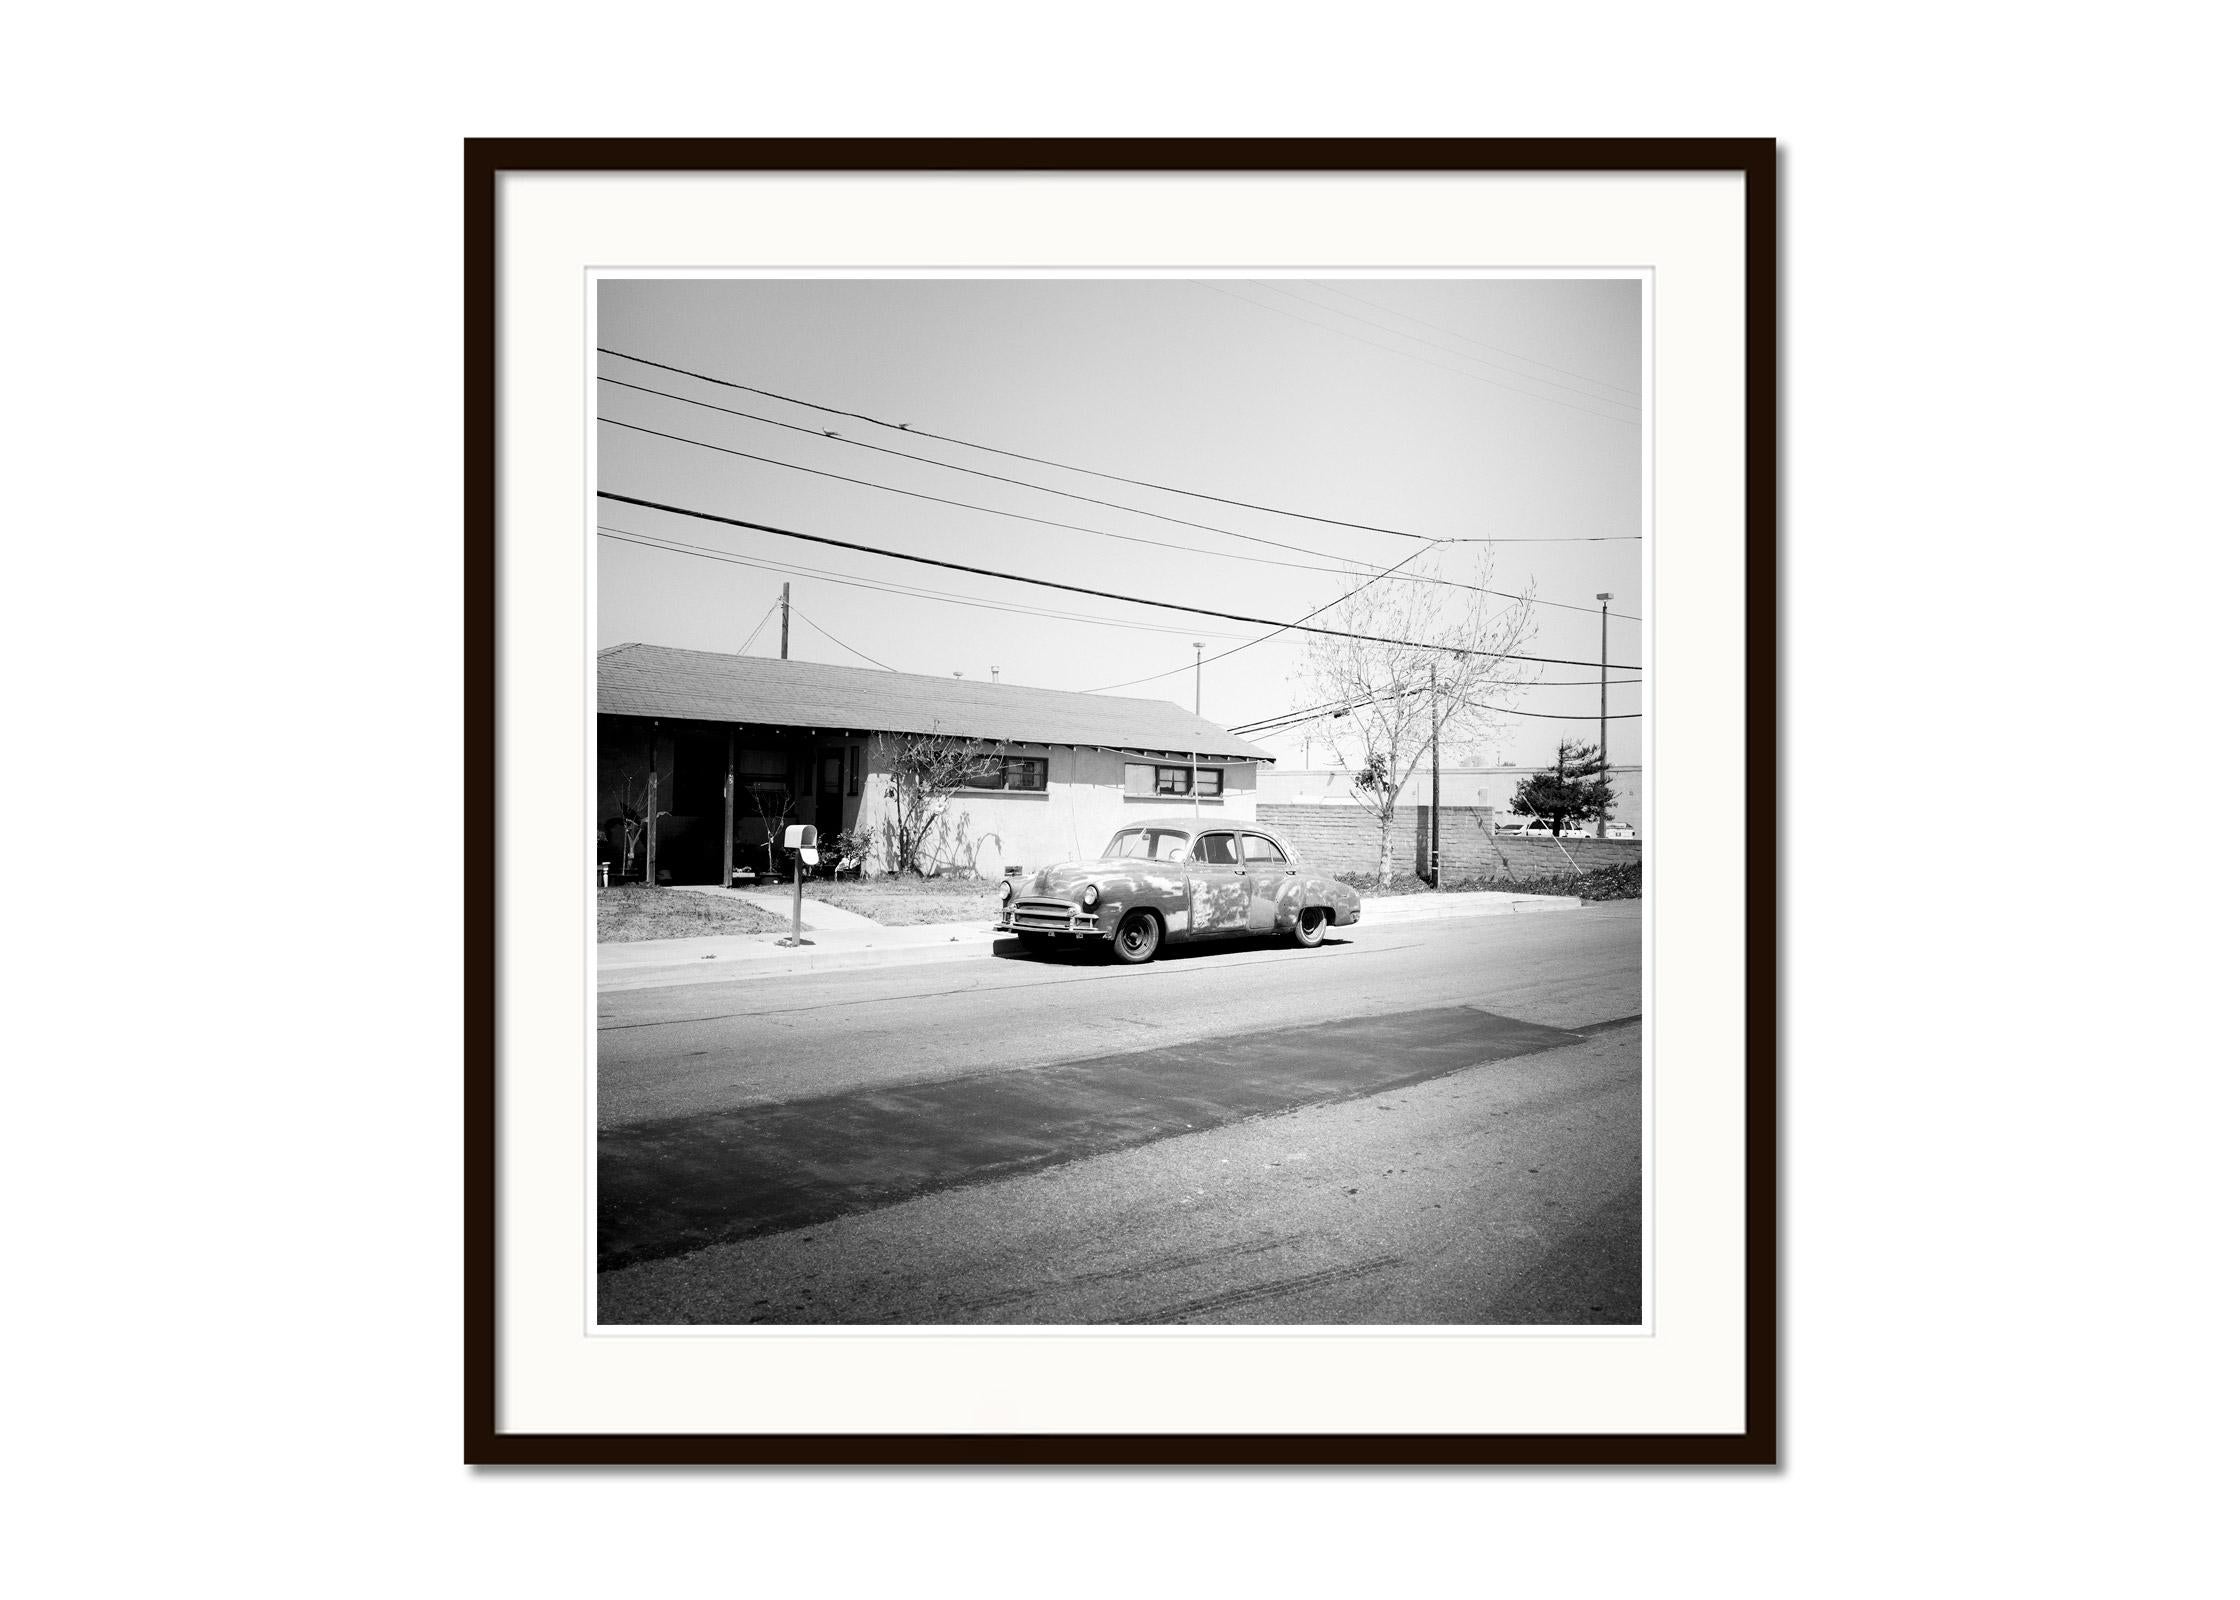 Haus, Classic Car, Arizona, USA, Schwarz-Weiß-Landschaftsfotografie-Kunstdruck (Grau), Landscape Photograph, von Gerald Berghammer